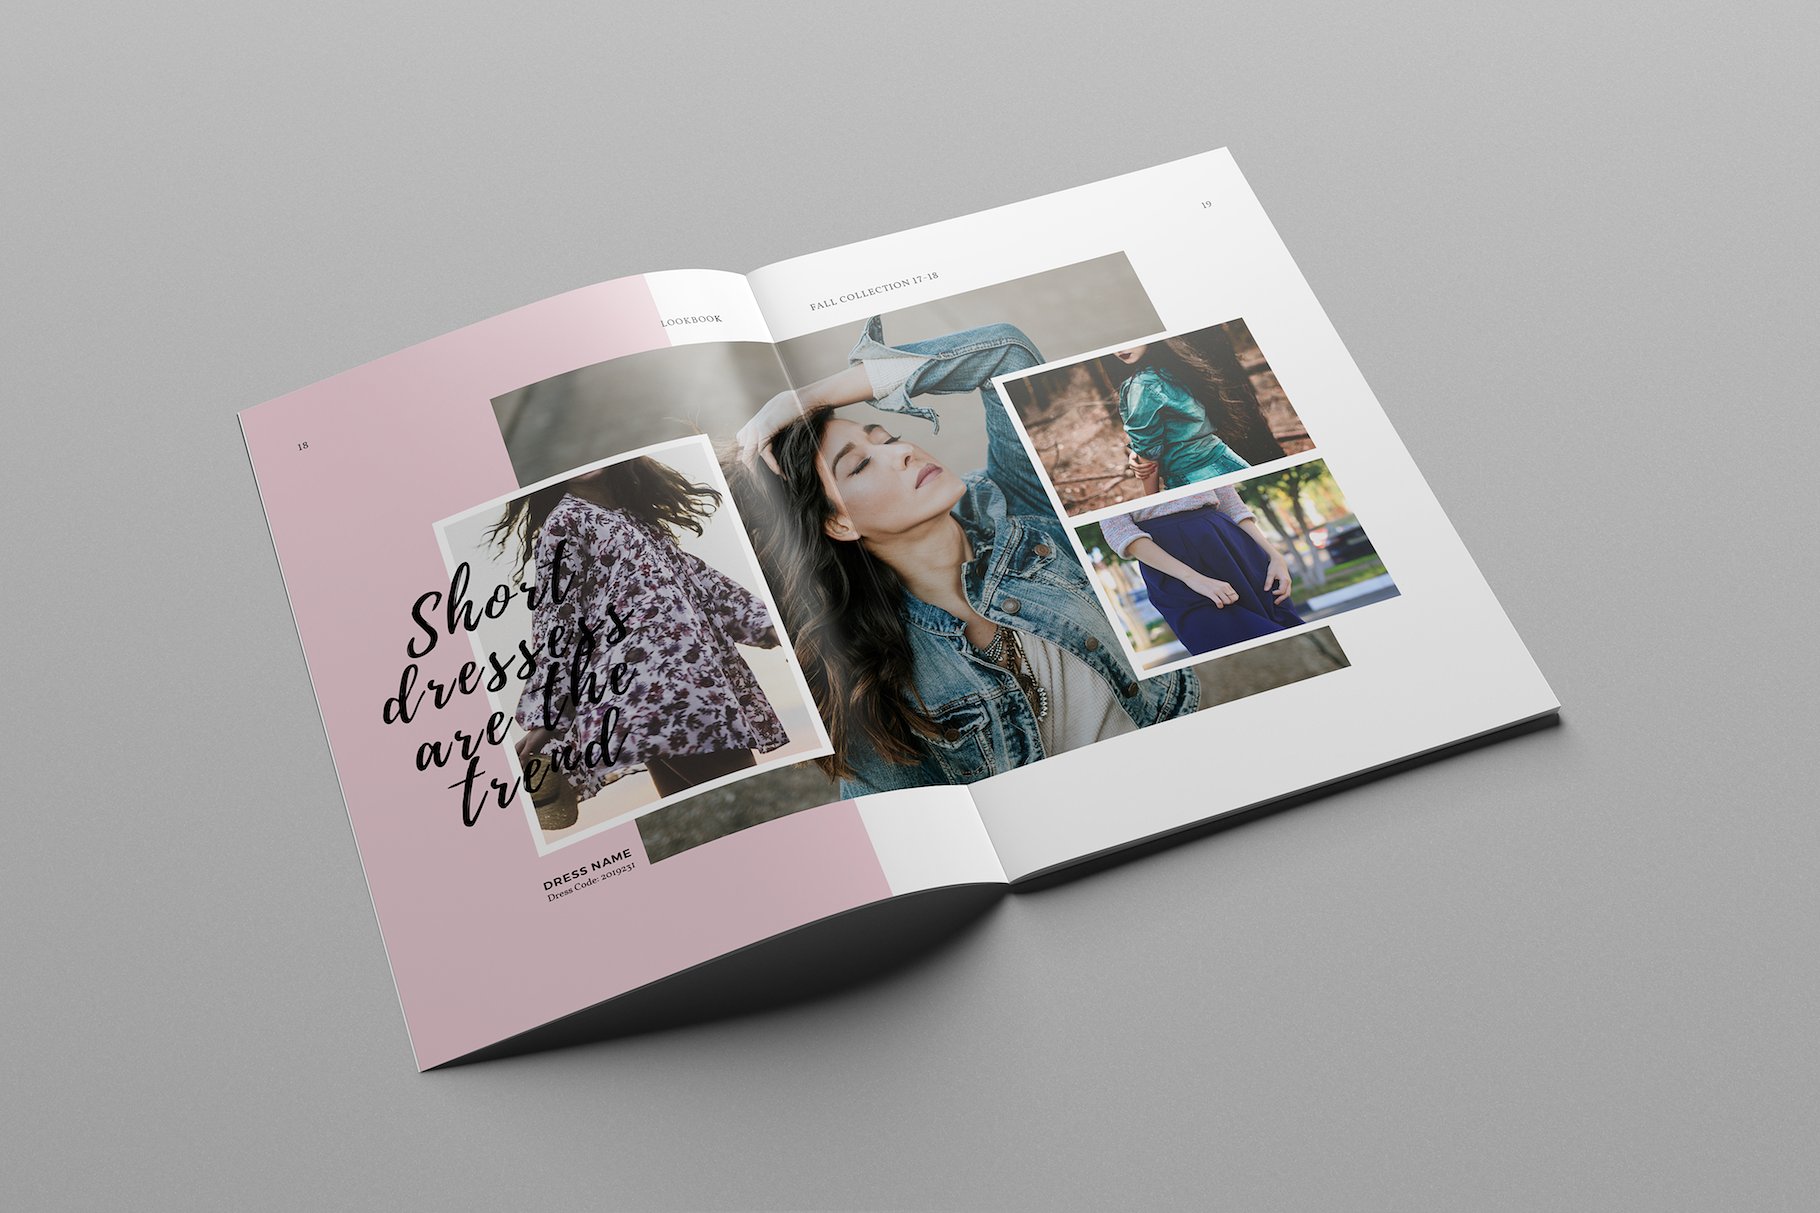 时尚极简的服装目录杂志模板下载 Fashion Catalog Lookbook Template [indd]插图(7)